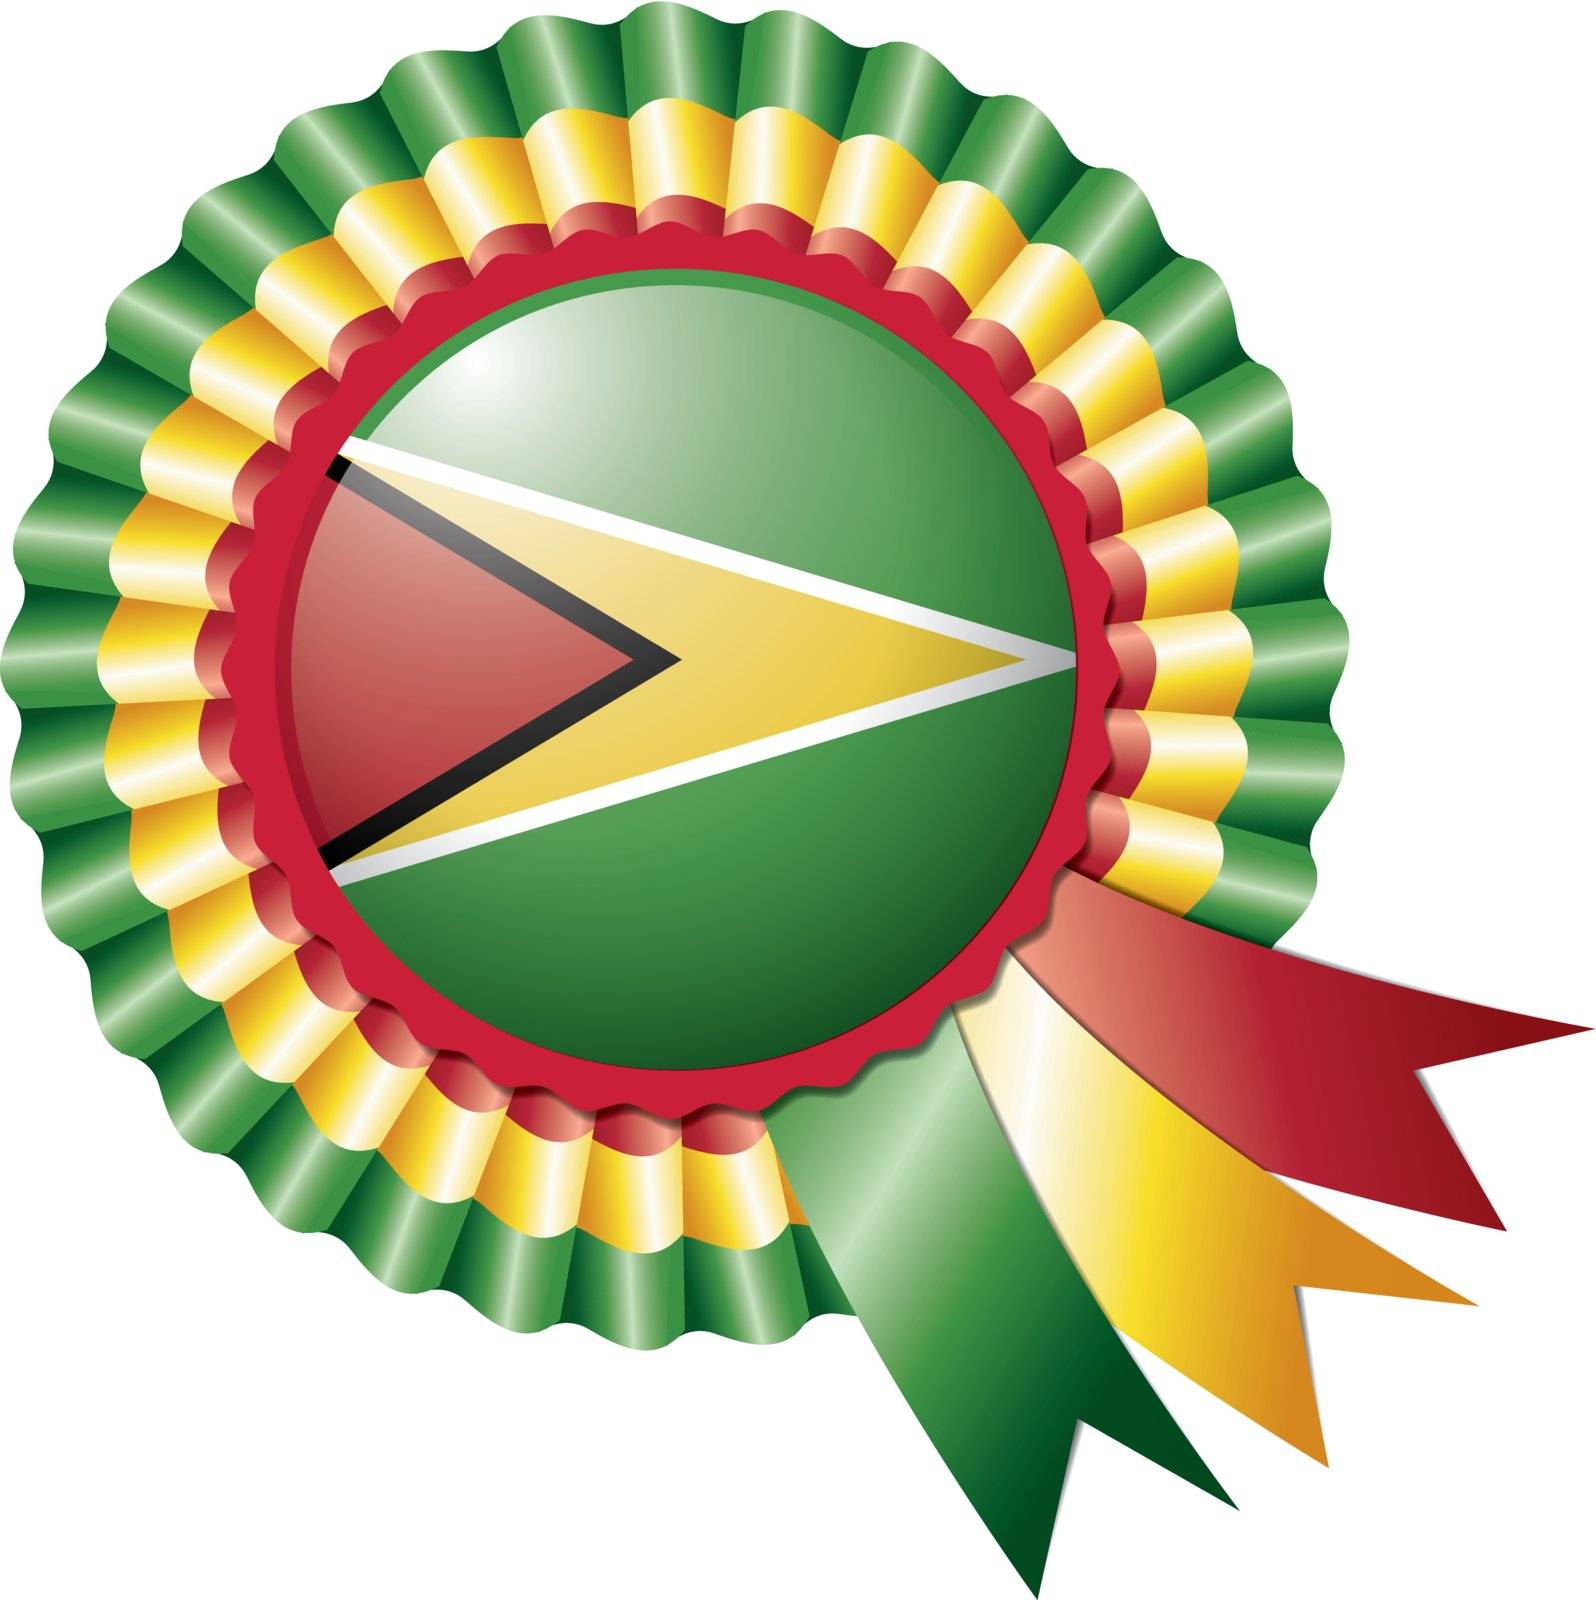 Guyana detailed silk rosette flag, eps10 vector illustration